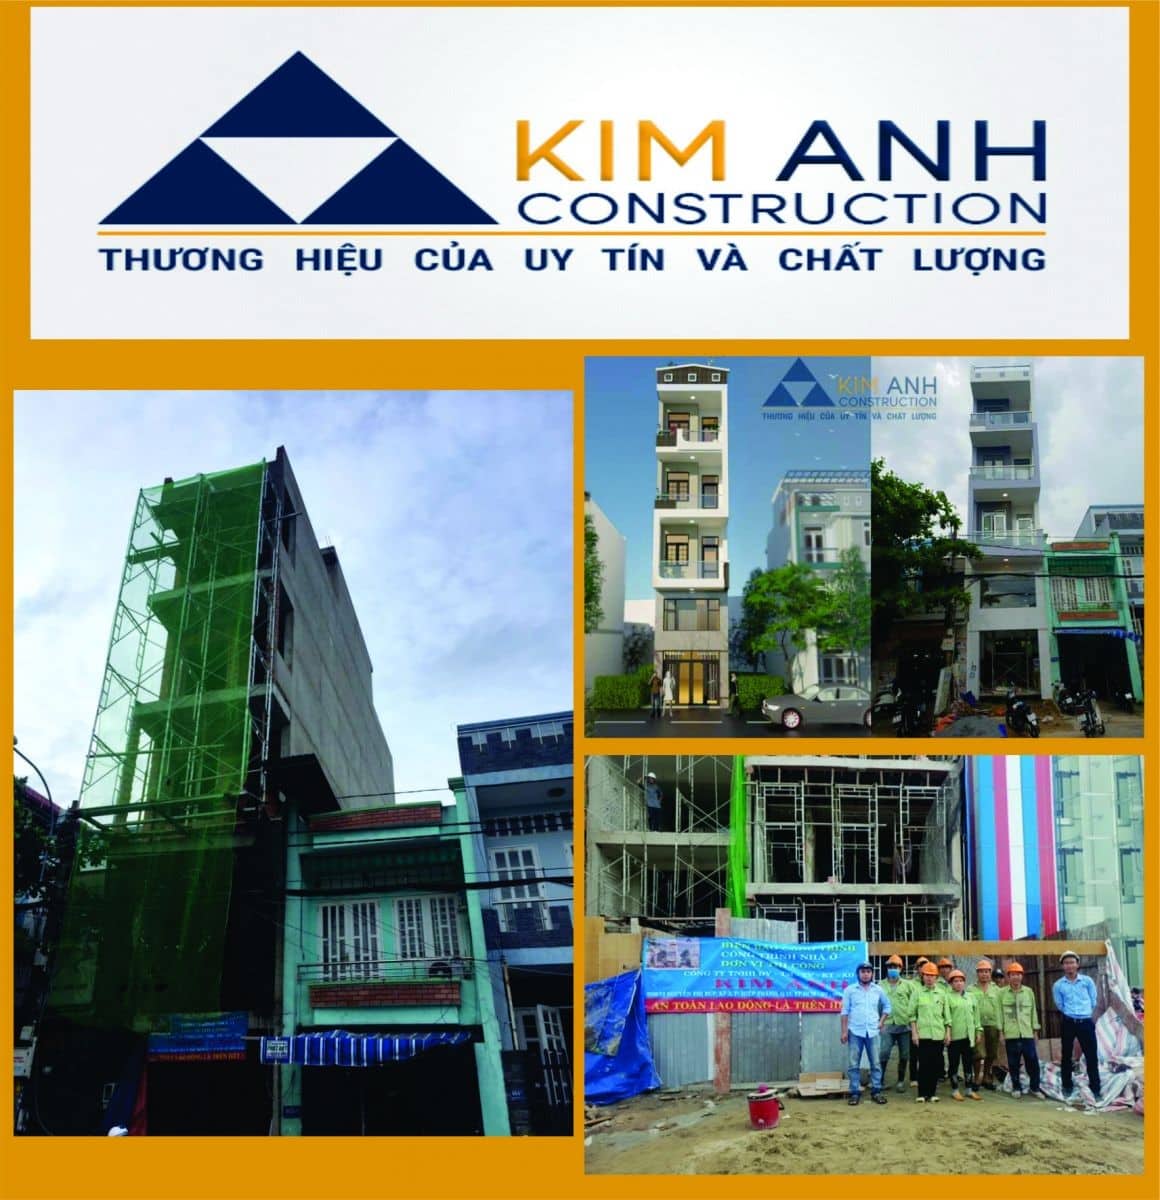 Xây Dựng Kim Anh - Chuyên xây nhà trọn gói giá rẻ, chất lượng Quận 12